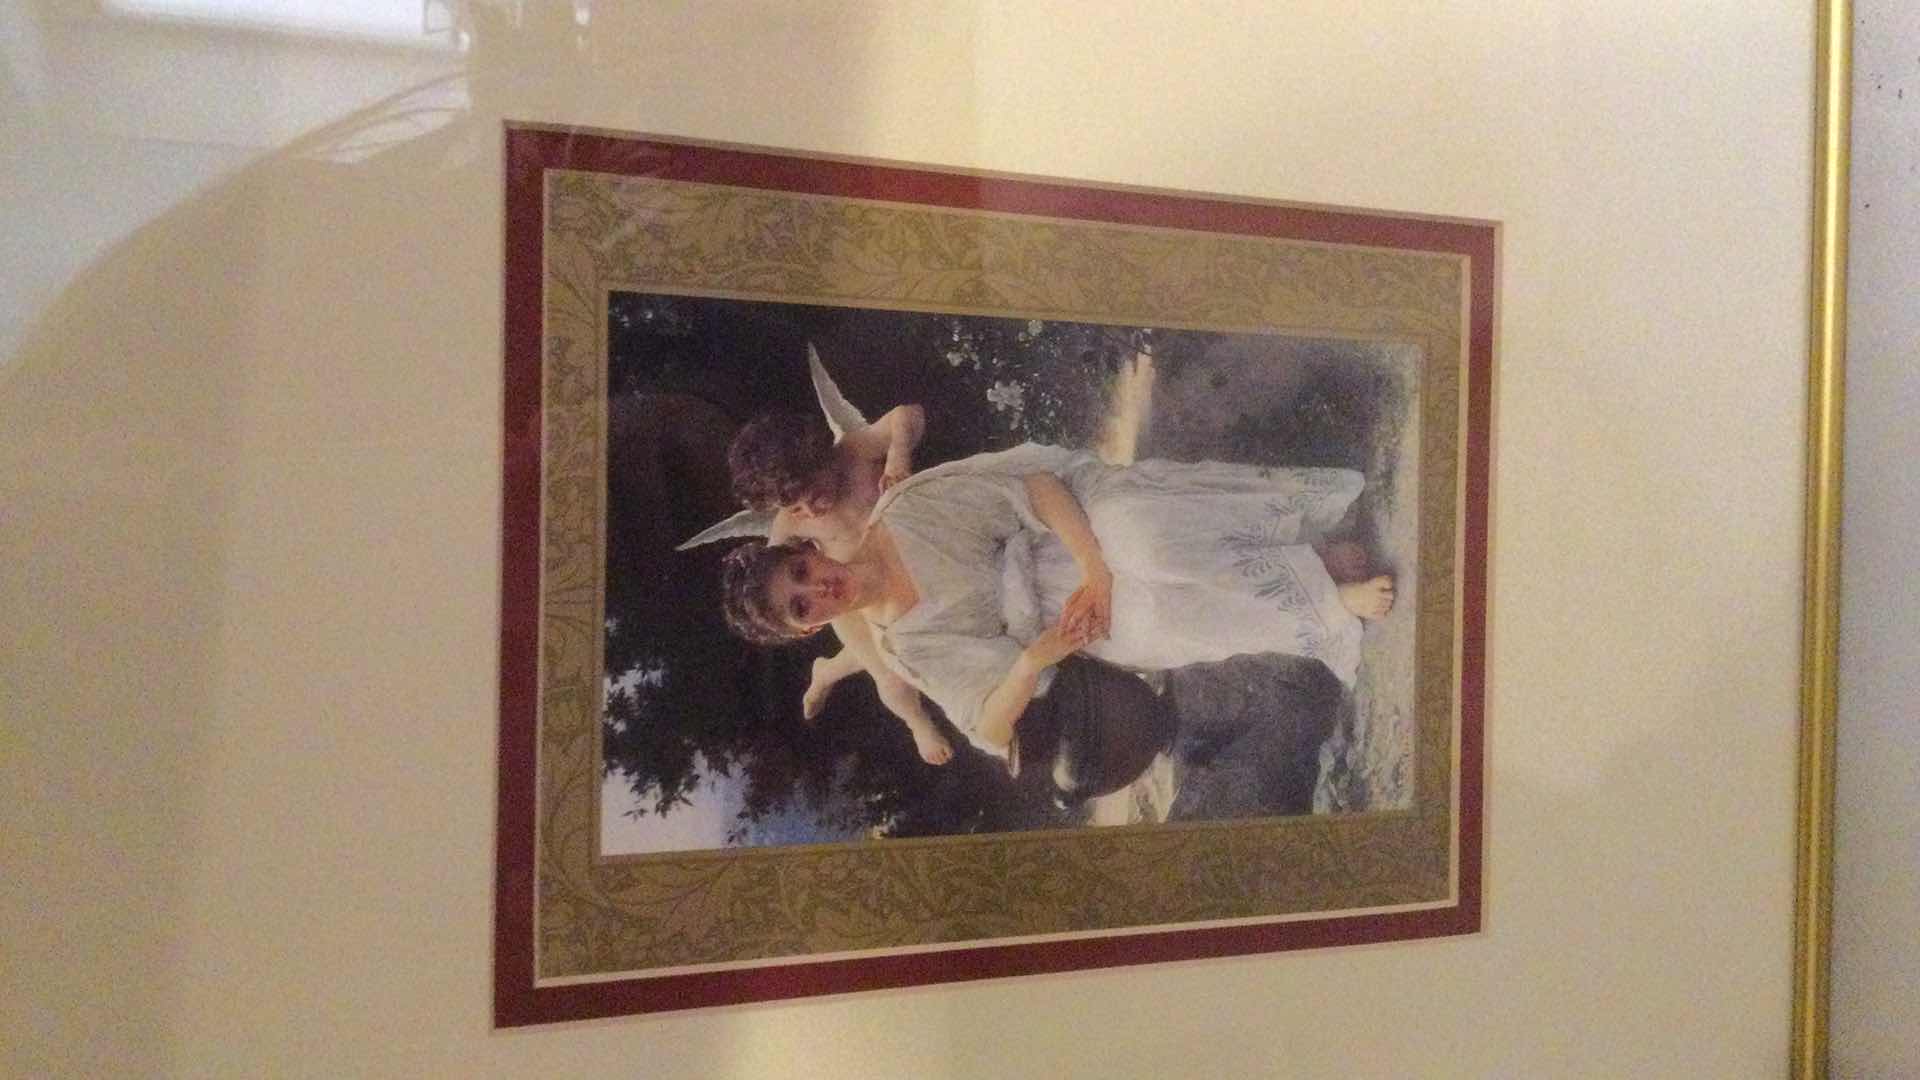 Photo 3 of GOLD FRAMED ANGEL ARTWORKS (2) 11” X 14”